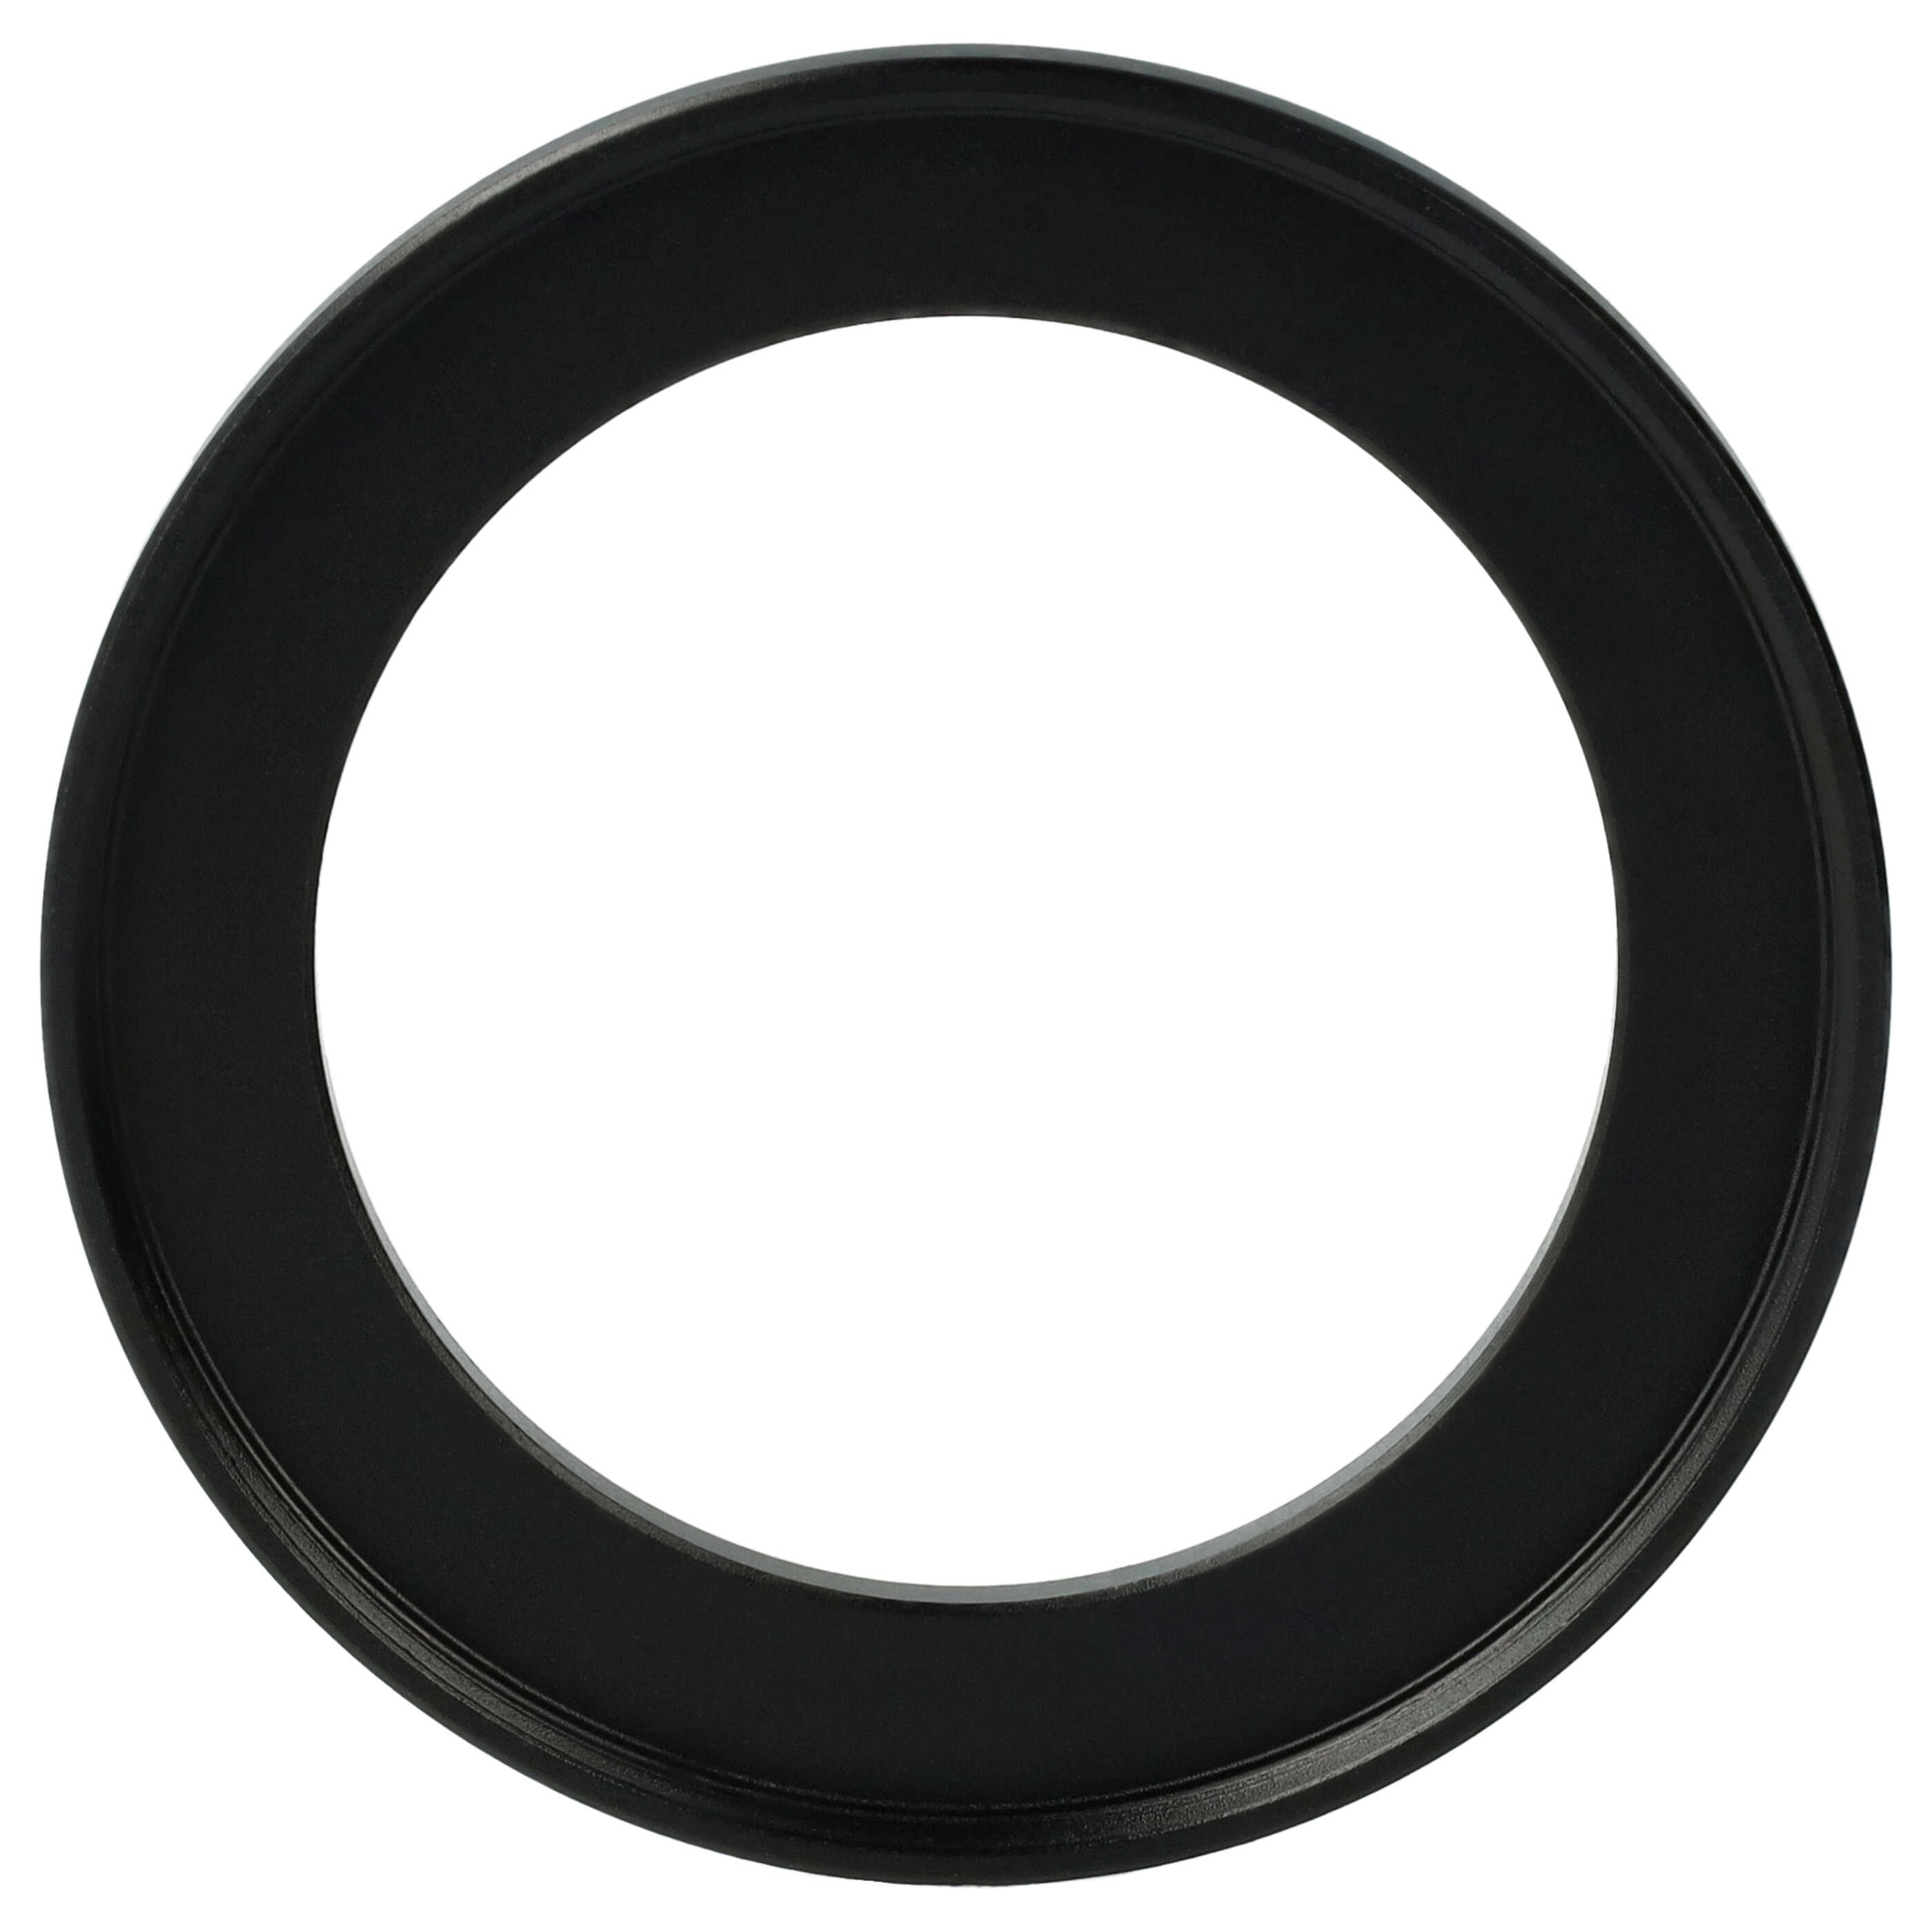 Step-Up-Ring Adapter 39 mm auf 49 mm passend für diverse Kamera-Objektive - Filteradapter